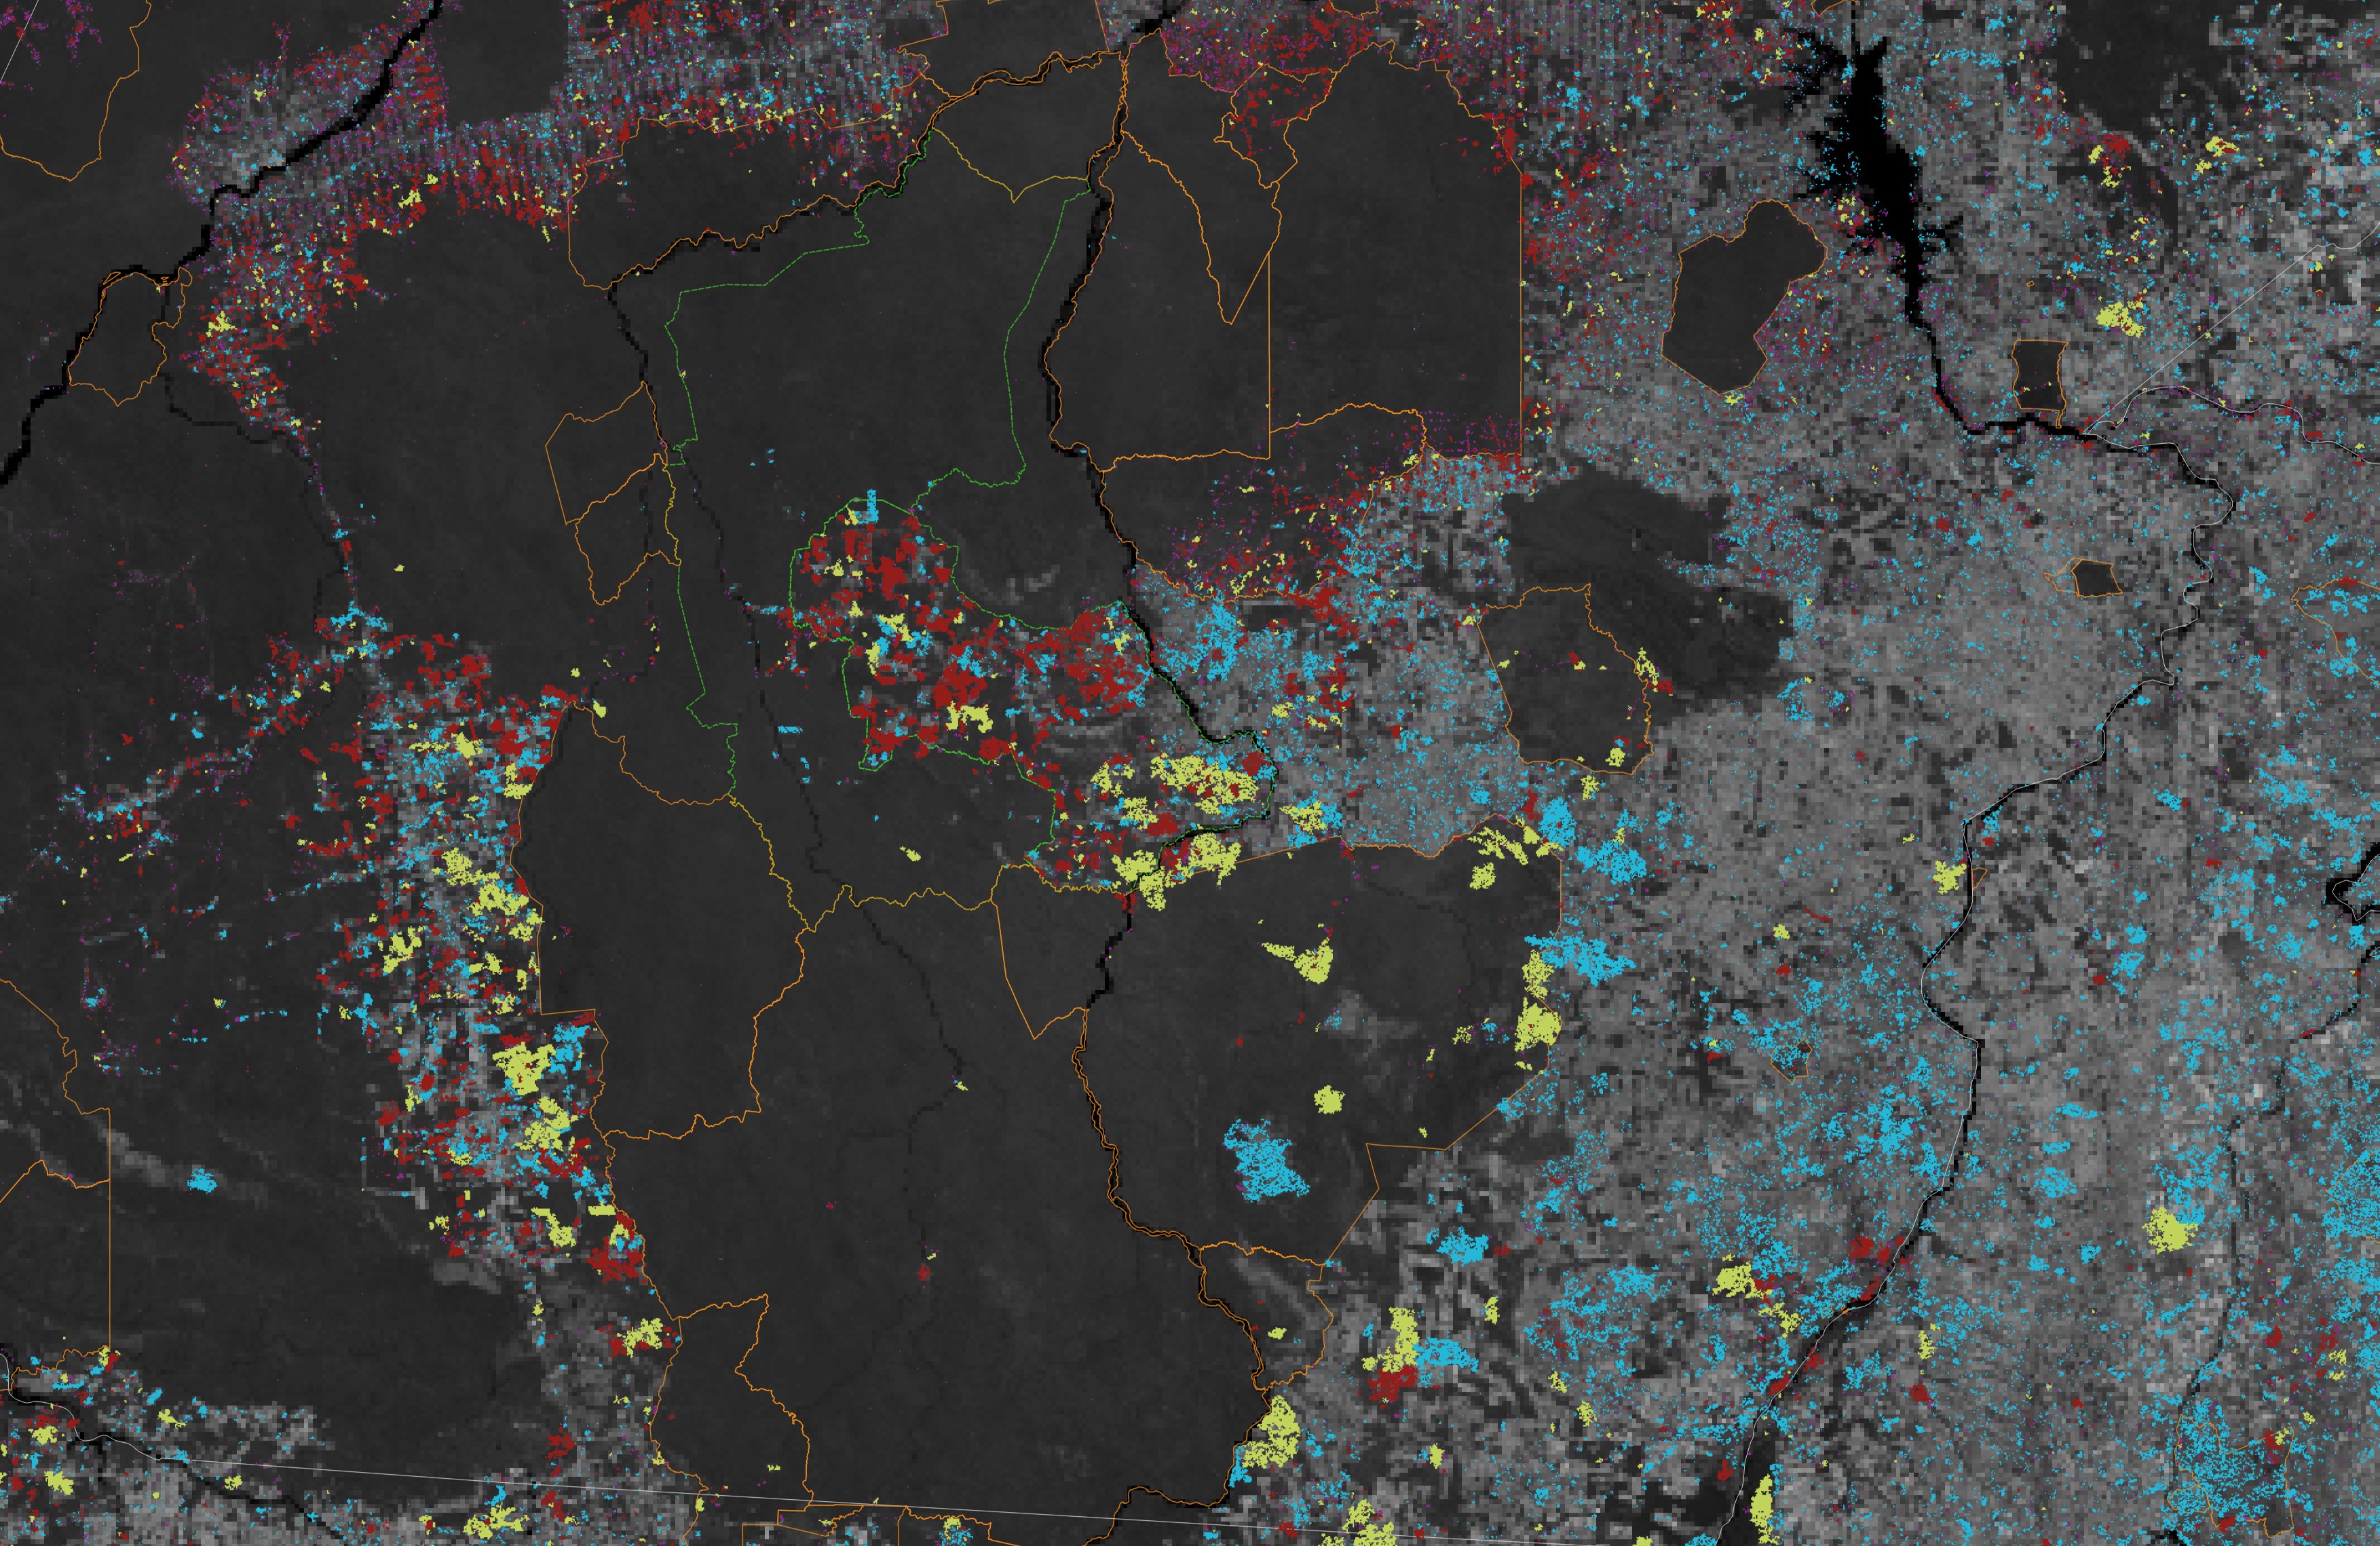 Imagens e dados mostram resultado da proteção de áreas ocupadas pelos Kayapós e outras etnias no Pará (Foto: Nasa Earth Observatory)